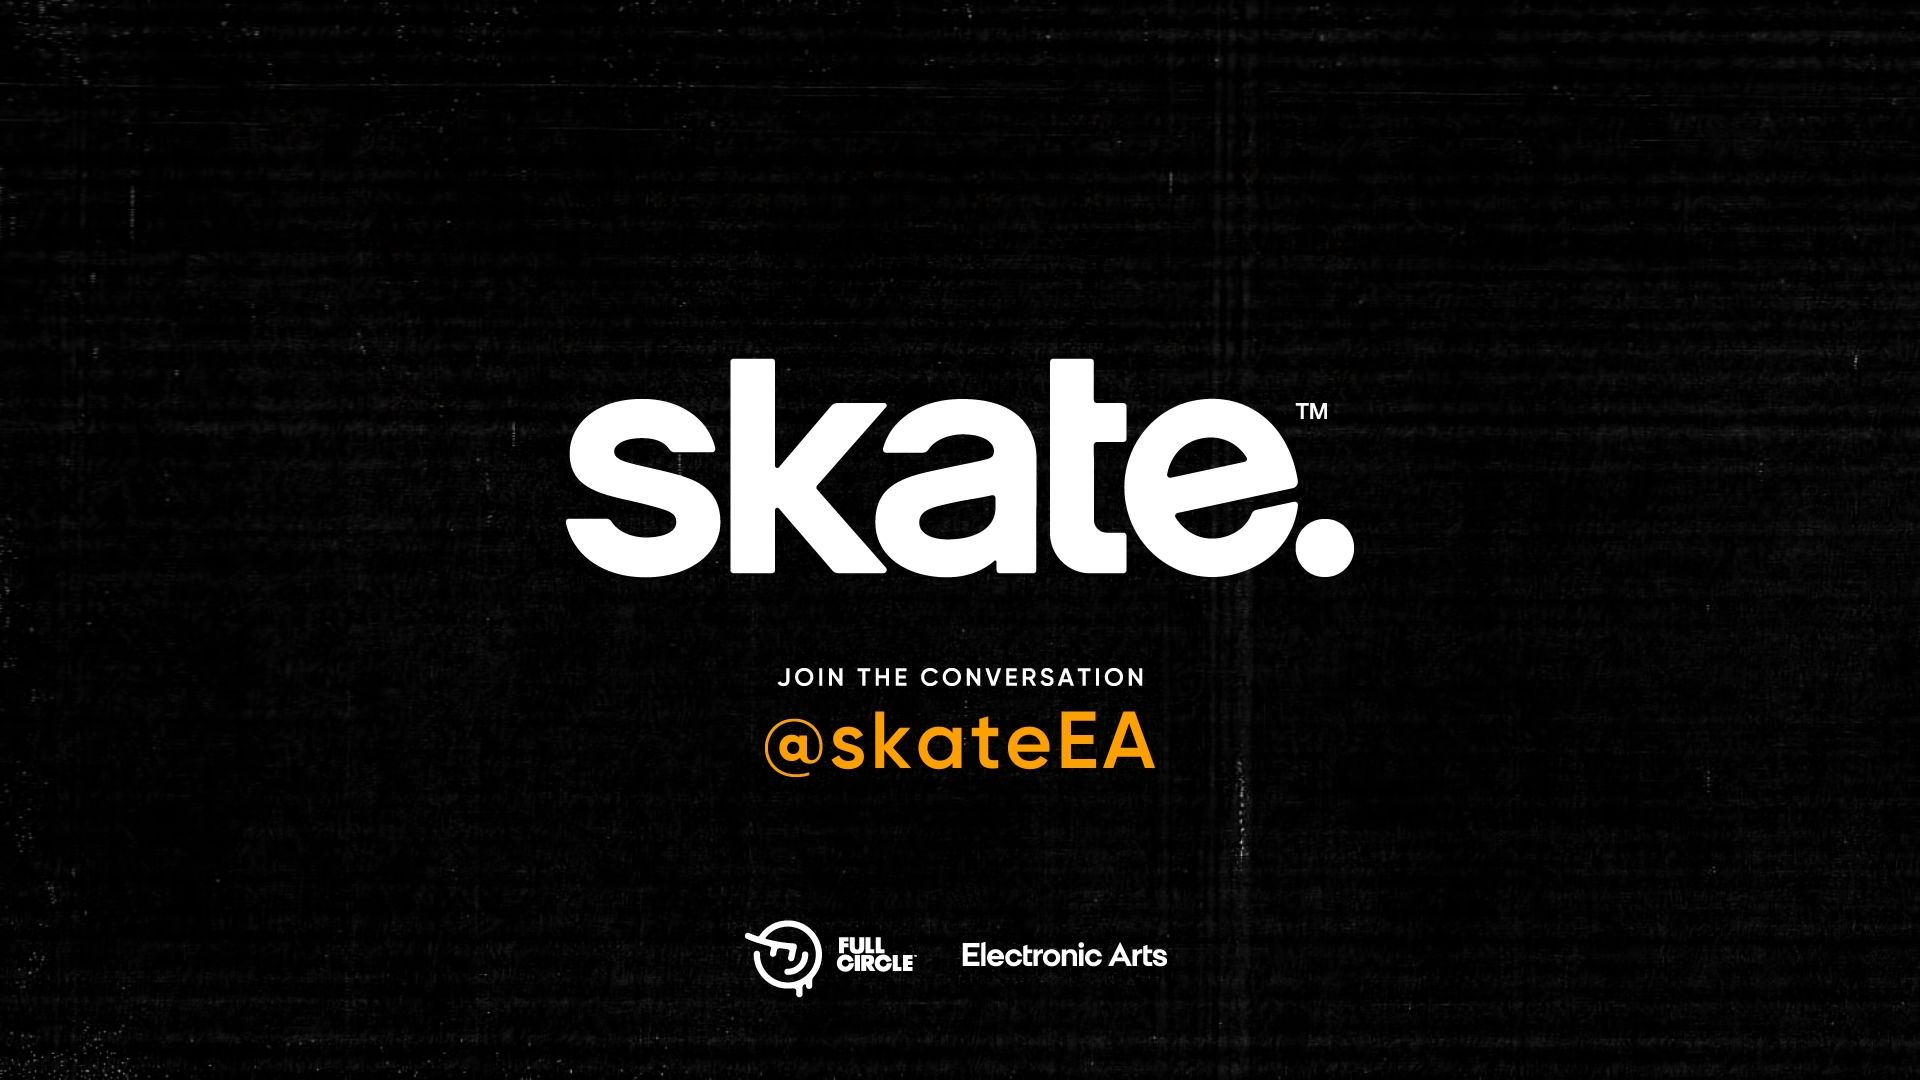 پخش تریلر نسخه پری آلفا بازی Skate جدید